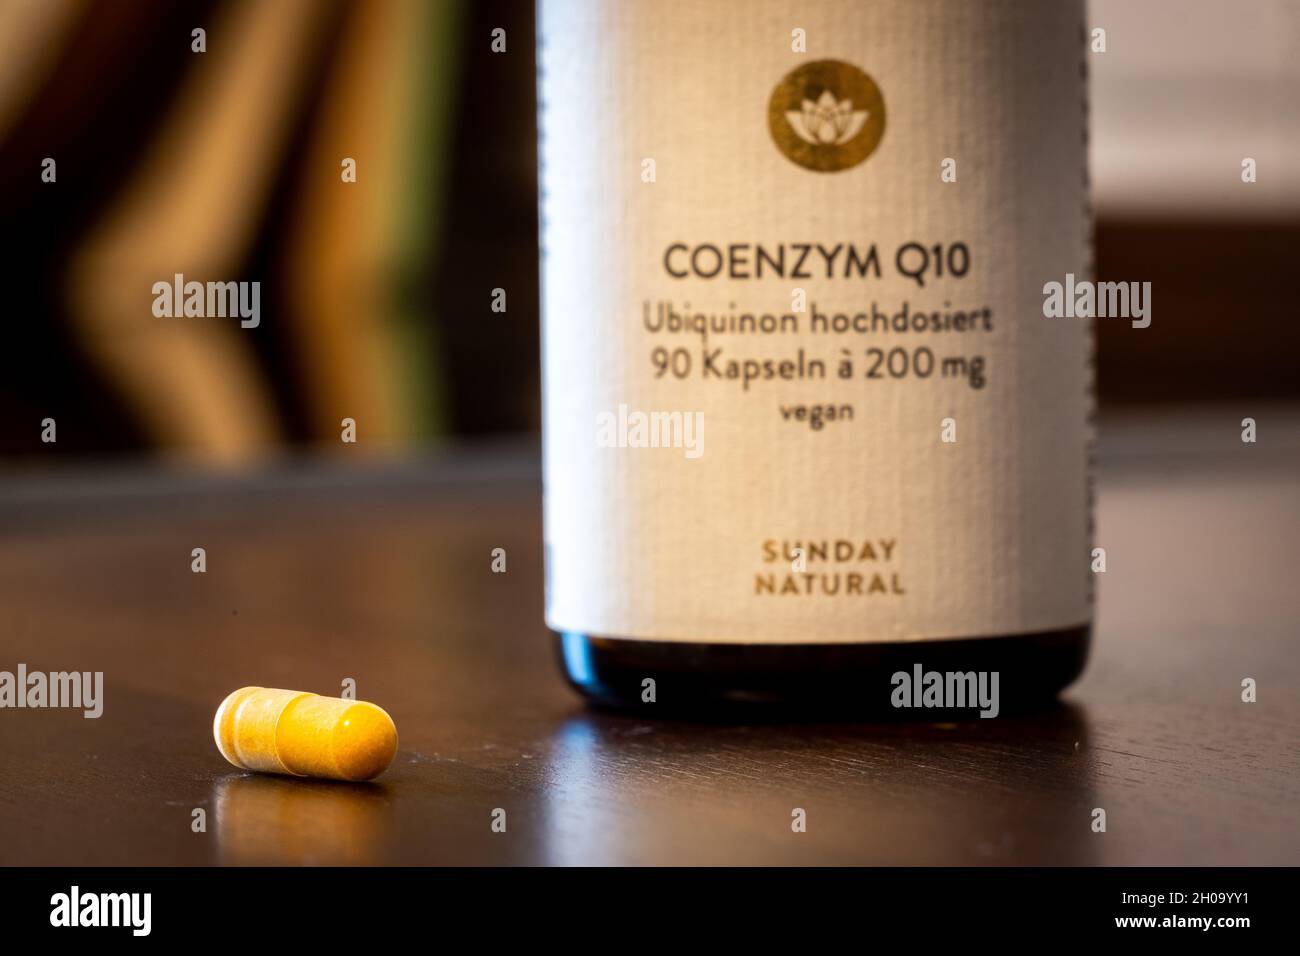 Una pillola di Q10 e il suo flacone Foto Stock